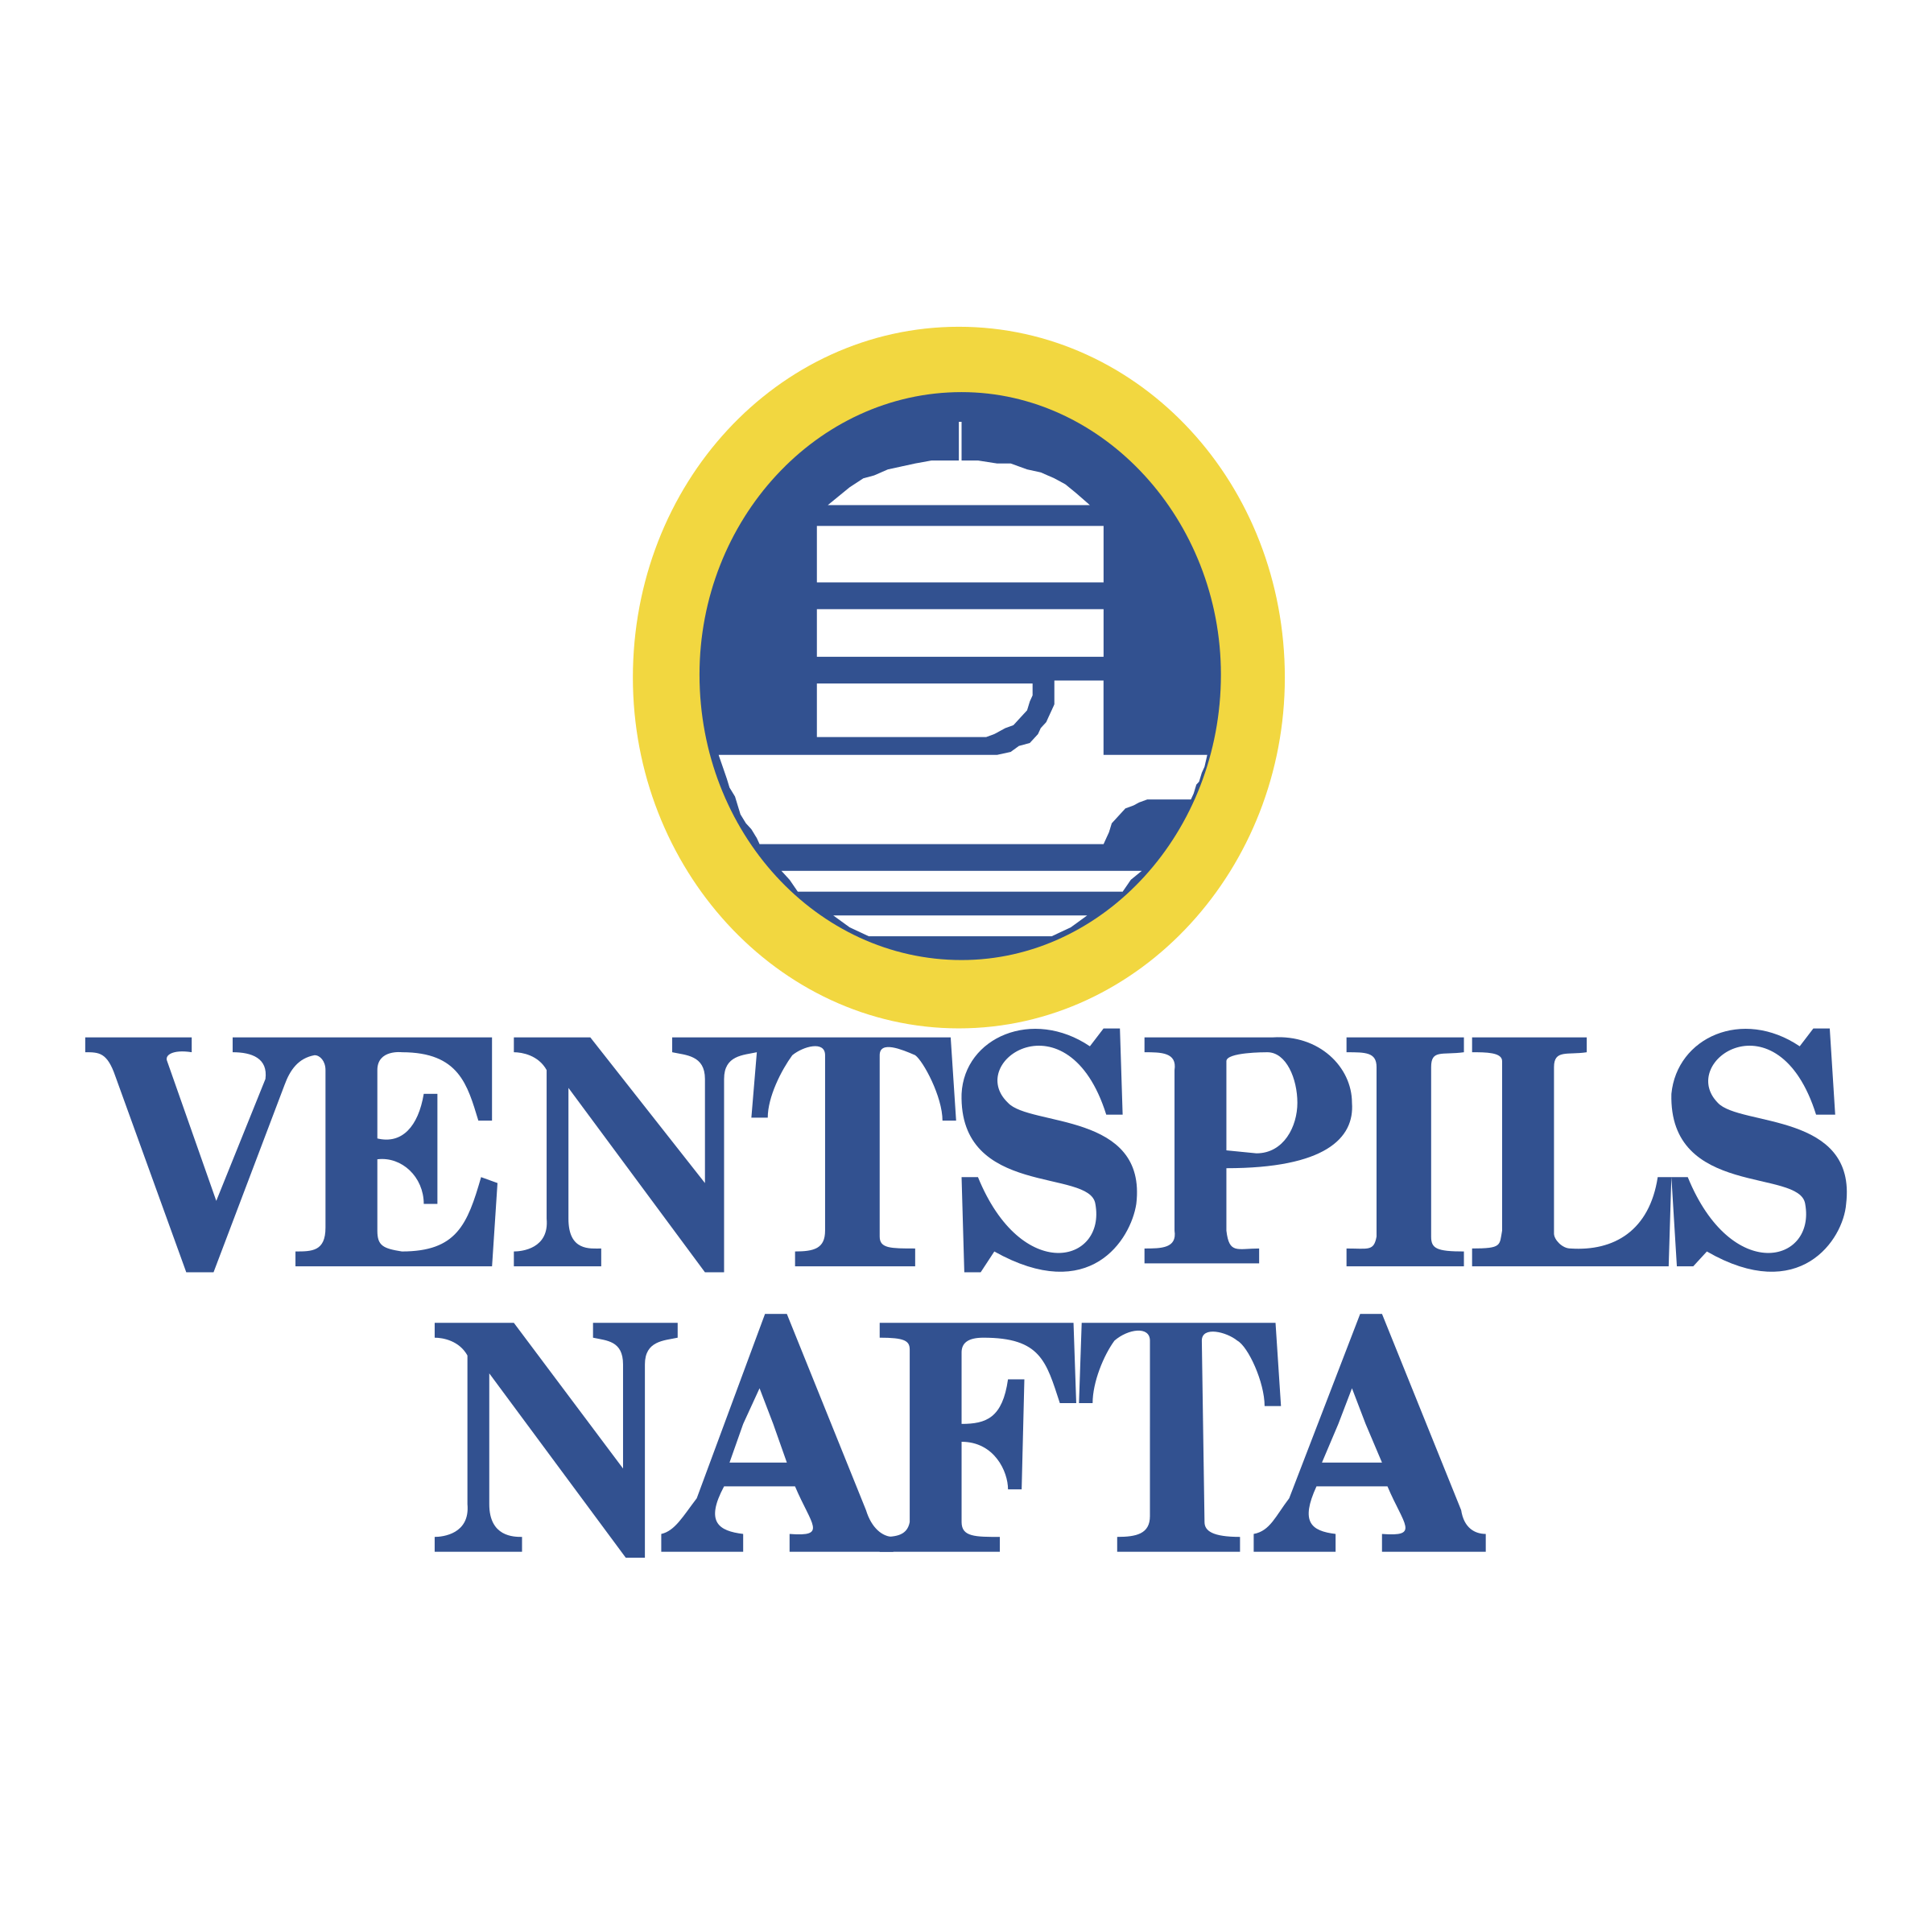 Nafta Logo - Ventspils Nafta Logo PNG Transparent & SVG Vector - Freebie Supply